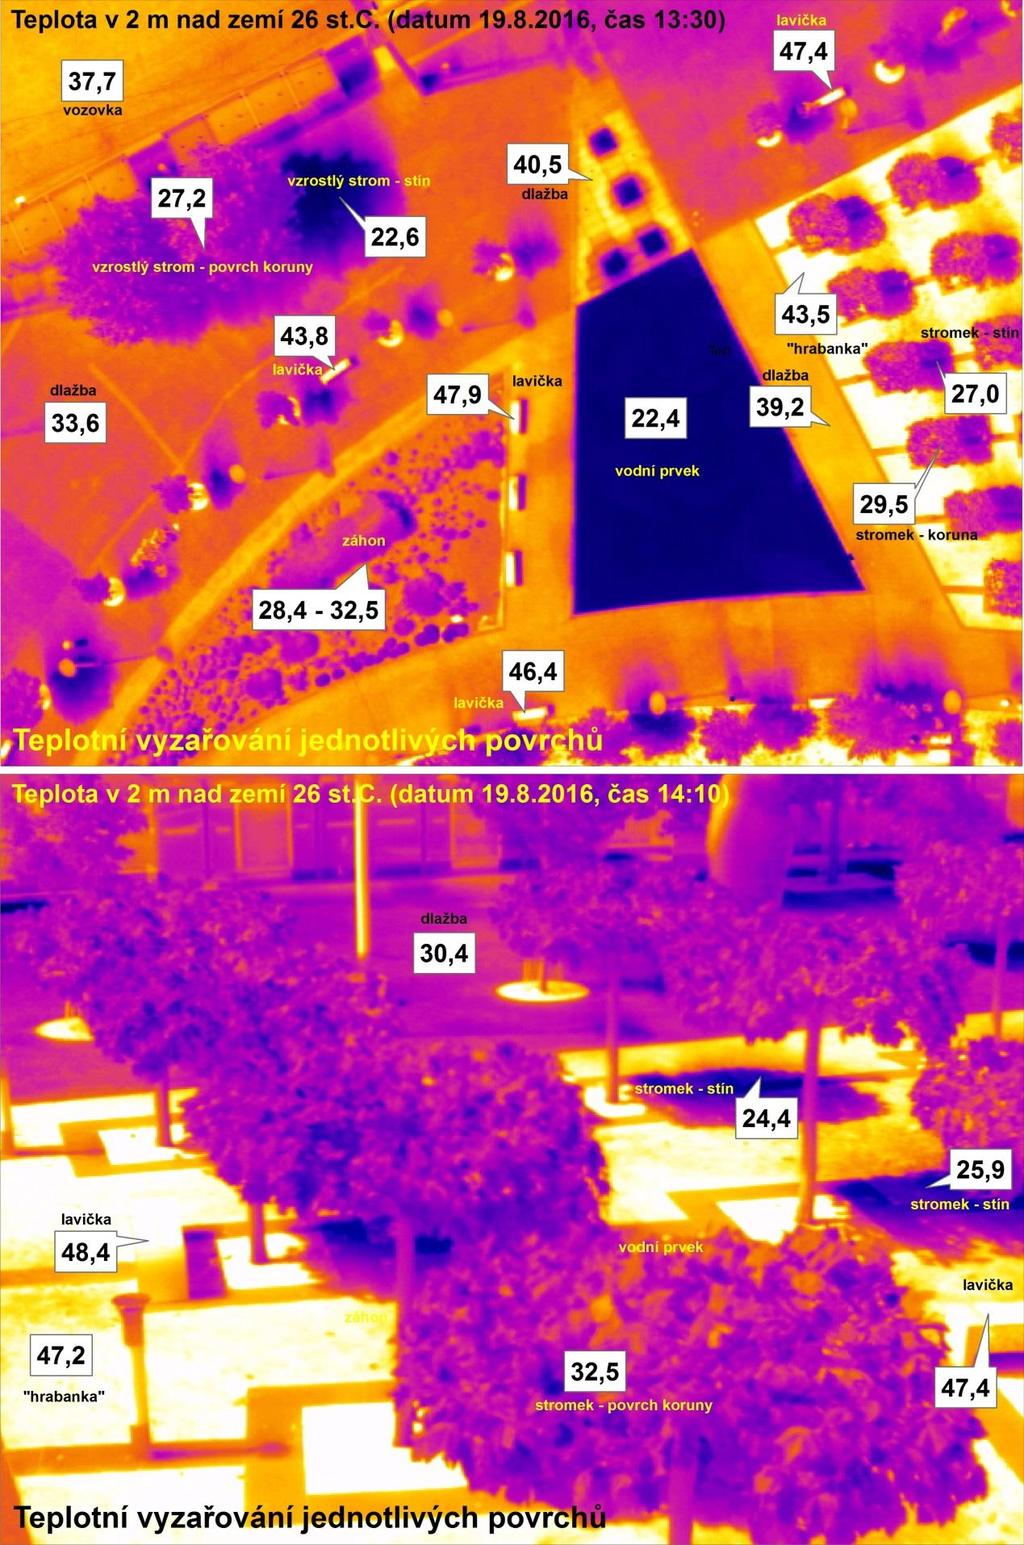 Obrázek 10 Ukázka termovizního záznamu teplotní vyzařování jednotlivých materiálů při teplotě